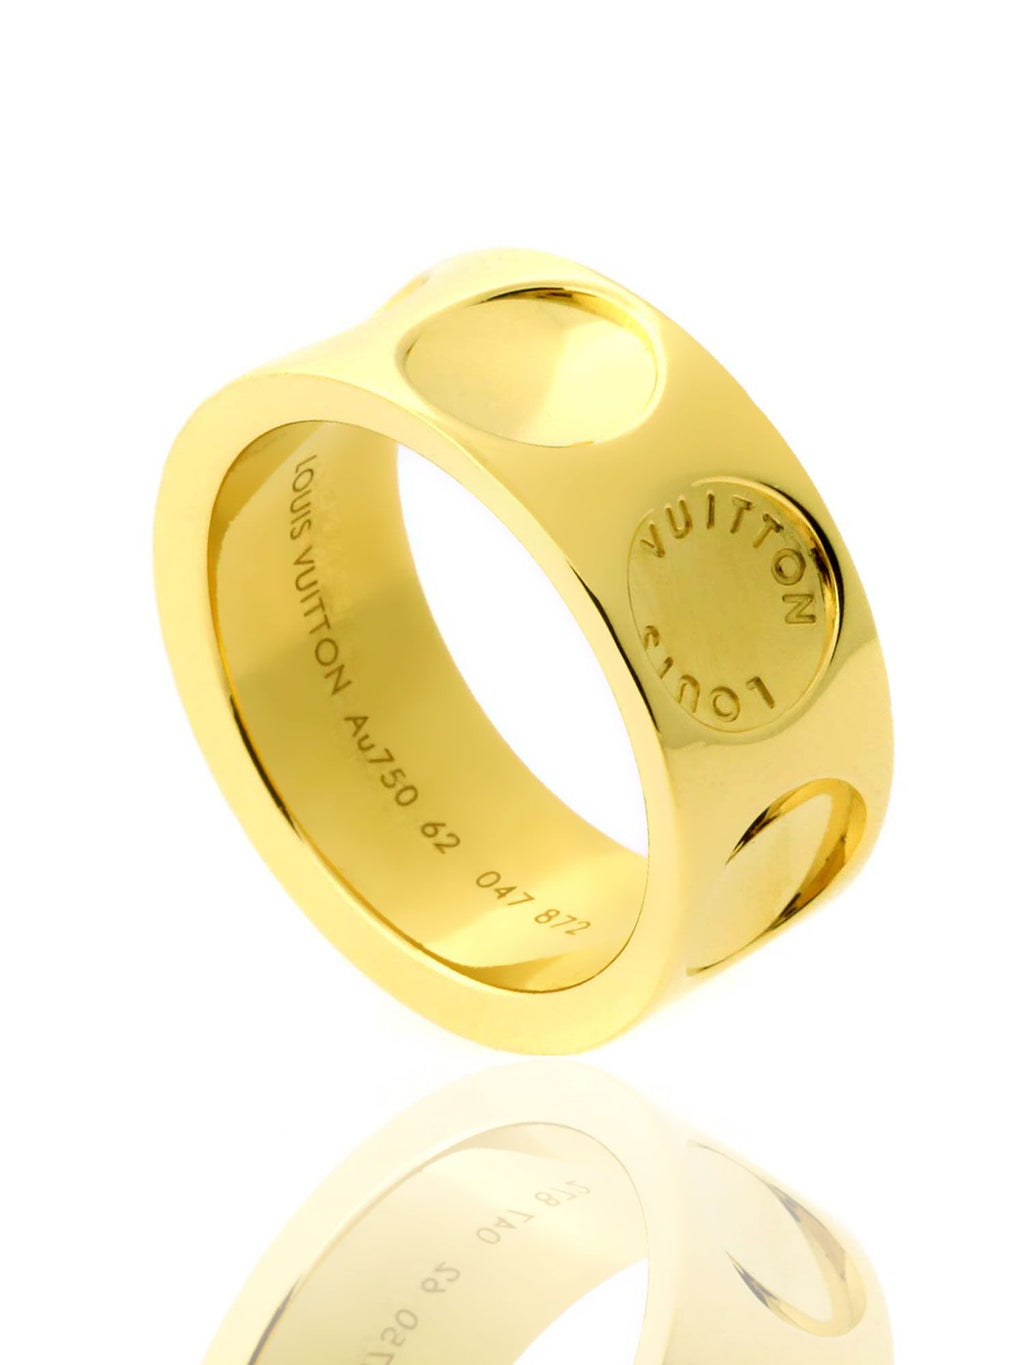 Louis Vuitton Empreinte Large 18k Yellow Gold Ring